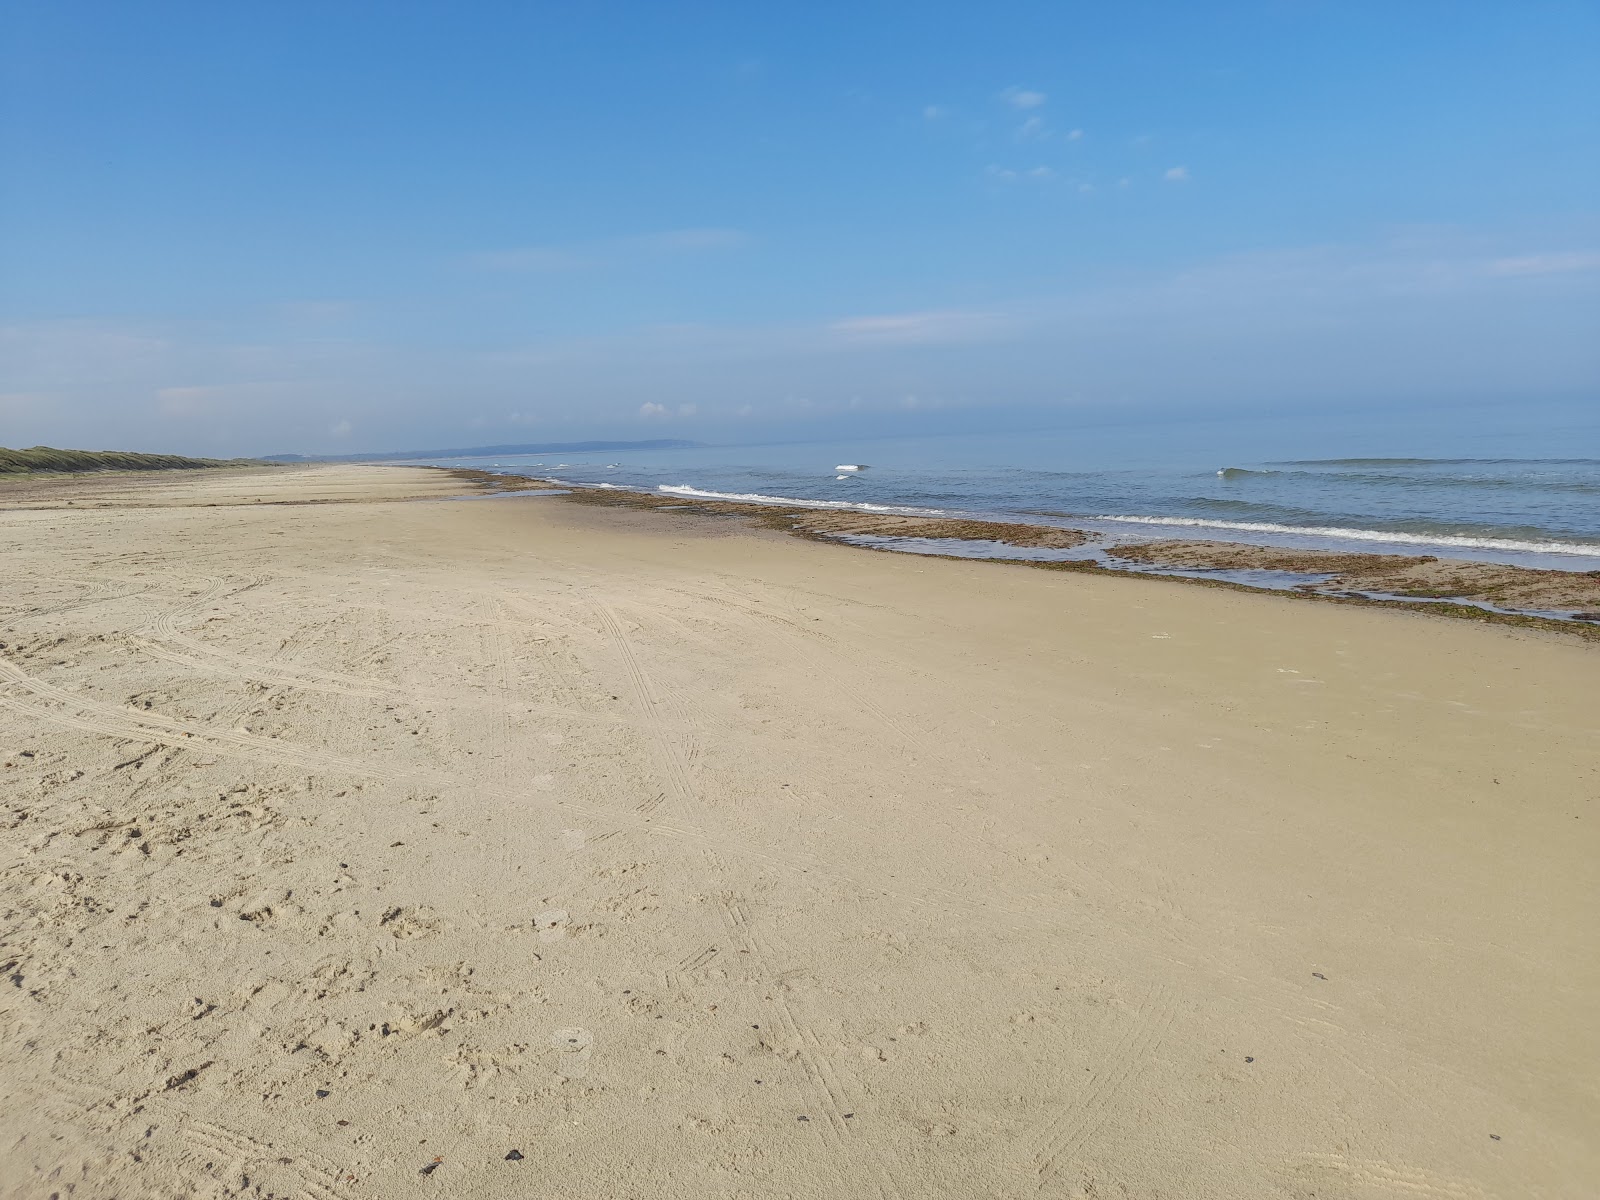 Ejstrup Beach'in fotoğrafı geniş plaj ile birlikte